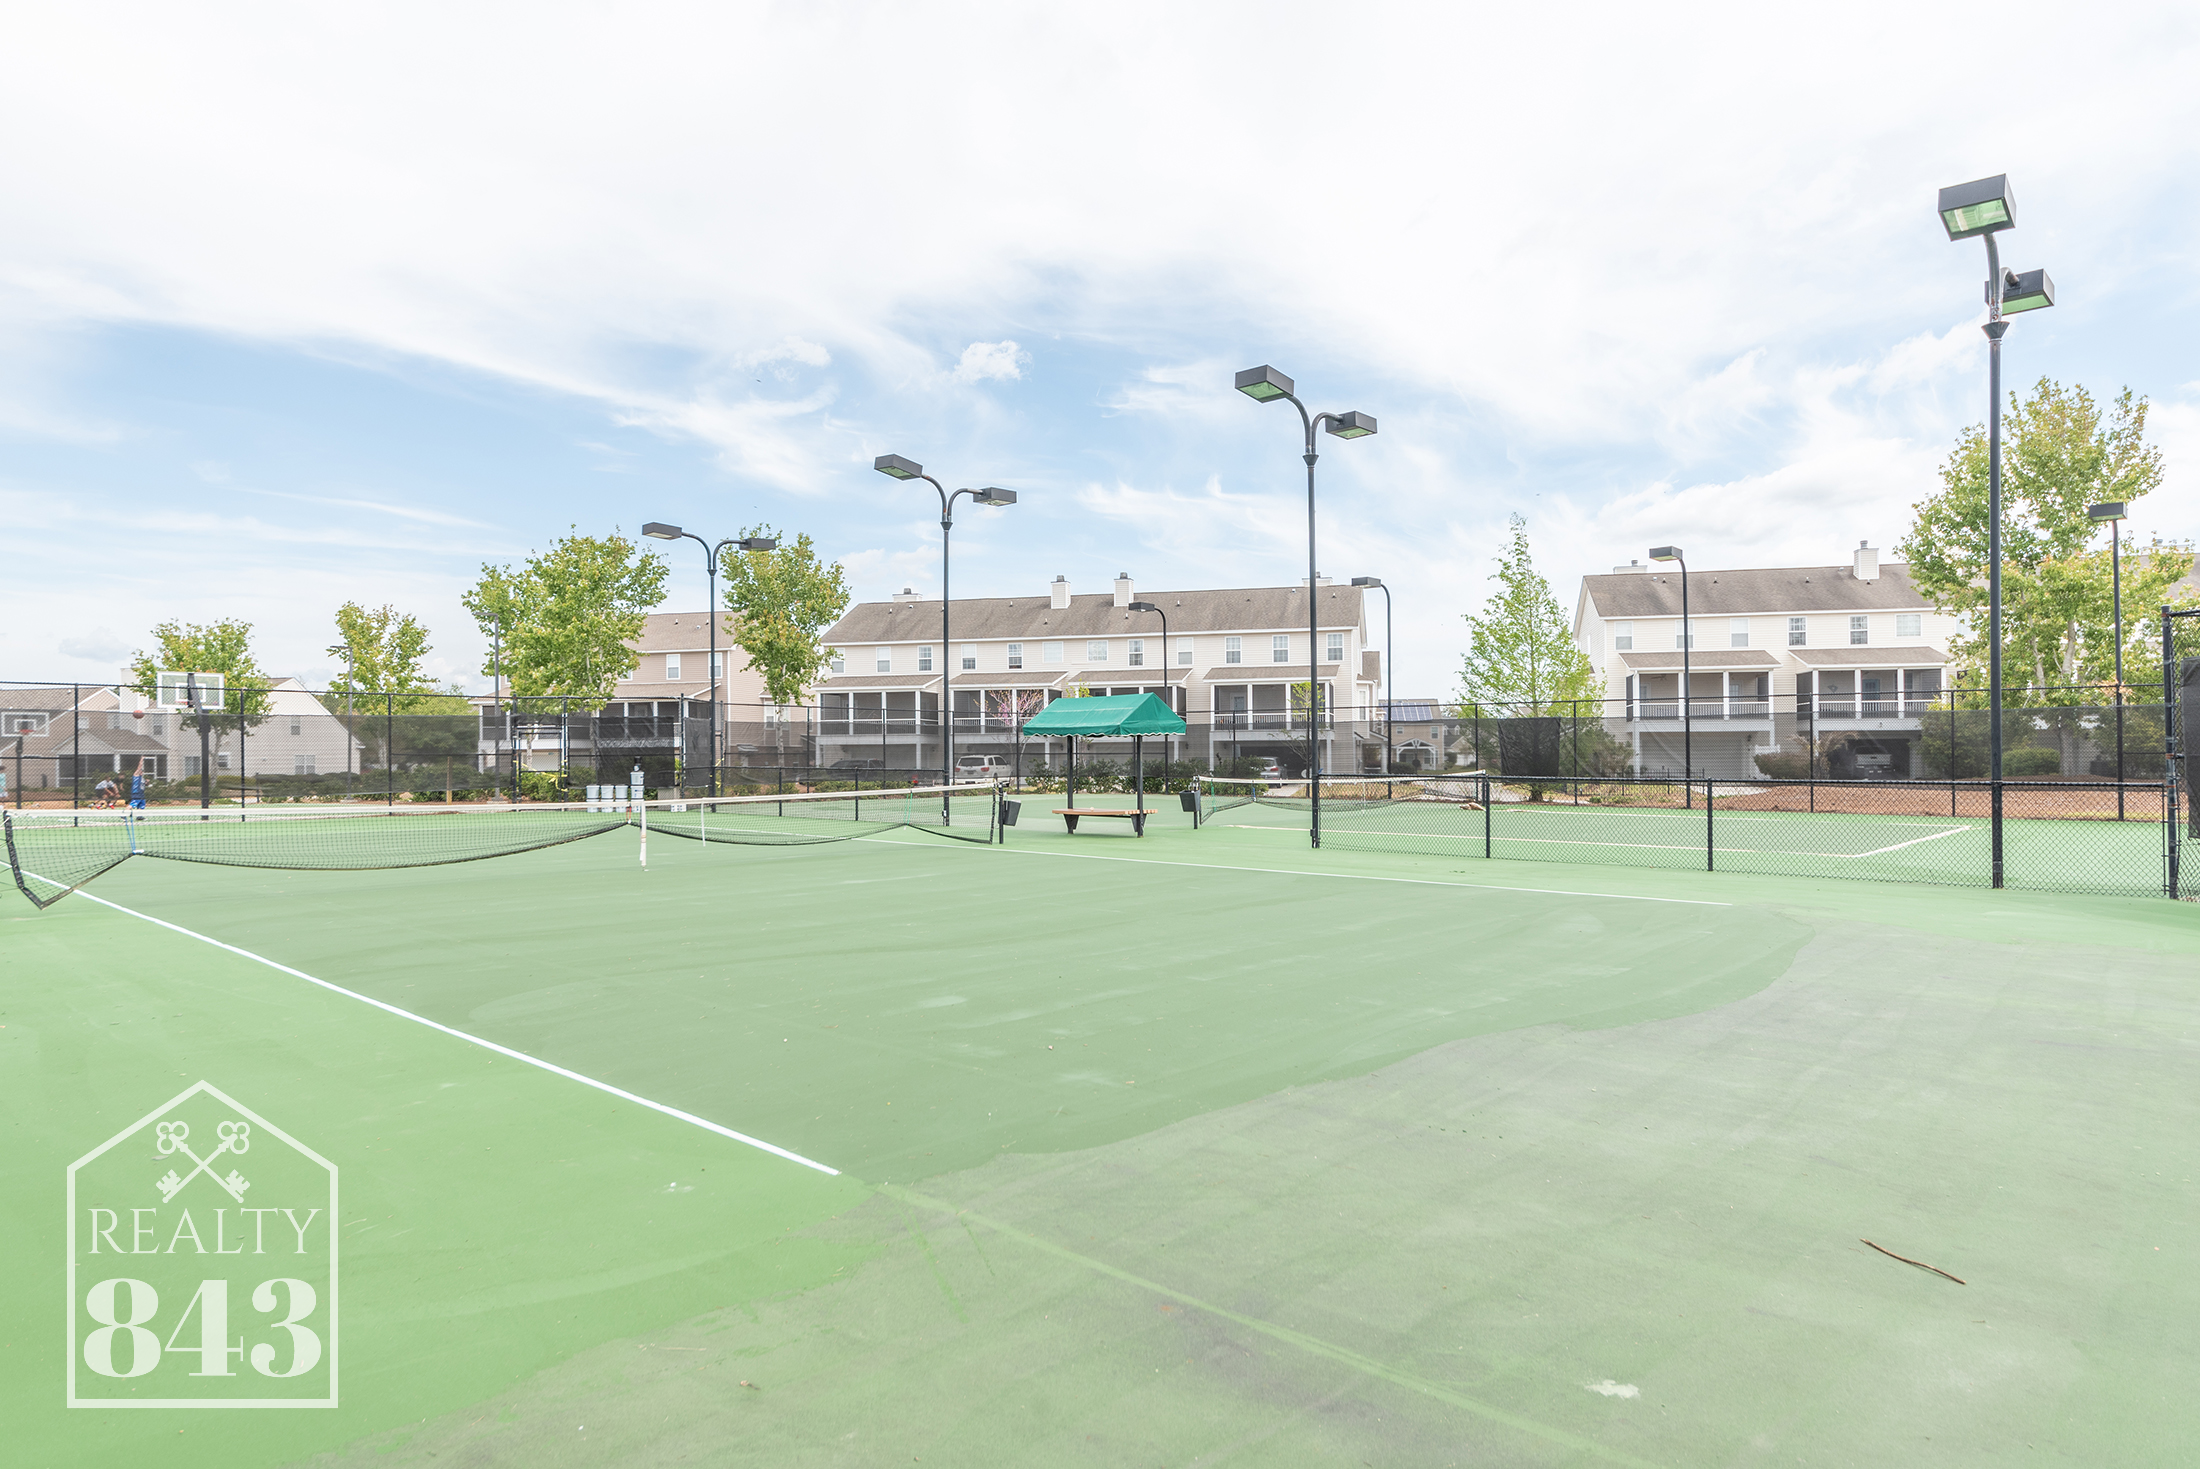 Illuminated Tennis Courts